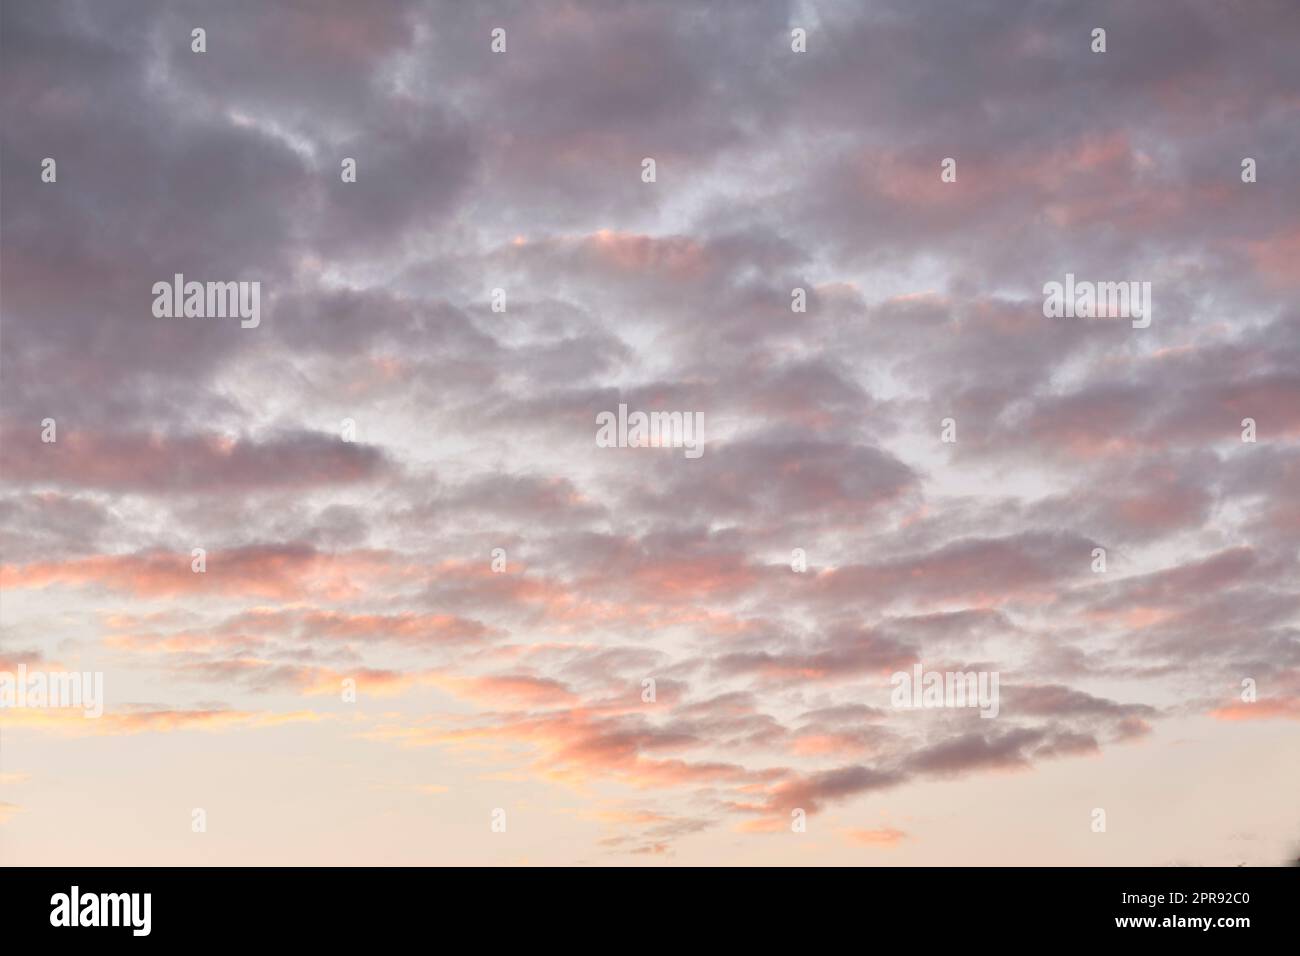 Copia lo spazio delle nuvole altocumulus in un cielo lungoso al crepuscolo. Panoramica panoramica di un suggestivo paesaggio nuvoloso e di un sottofondo fragoroso all'alba o al tramonto. Clima di buio buio all'alba all'aperto Foto Stock